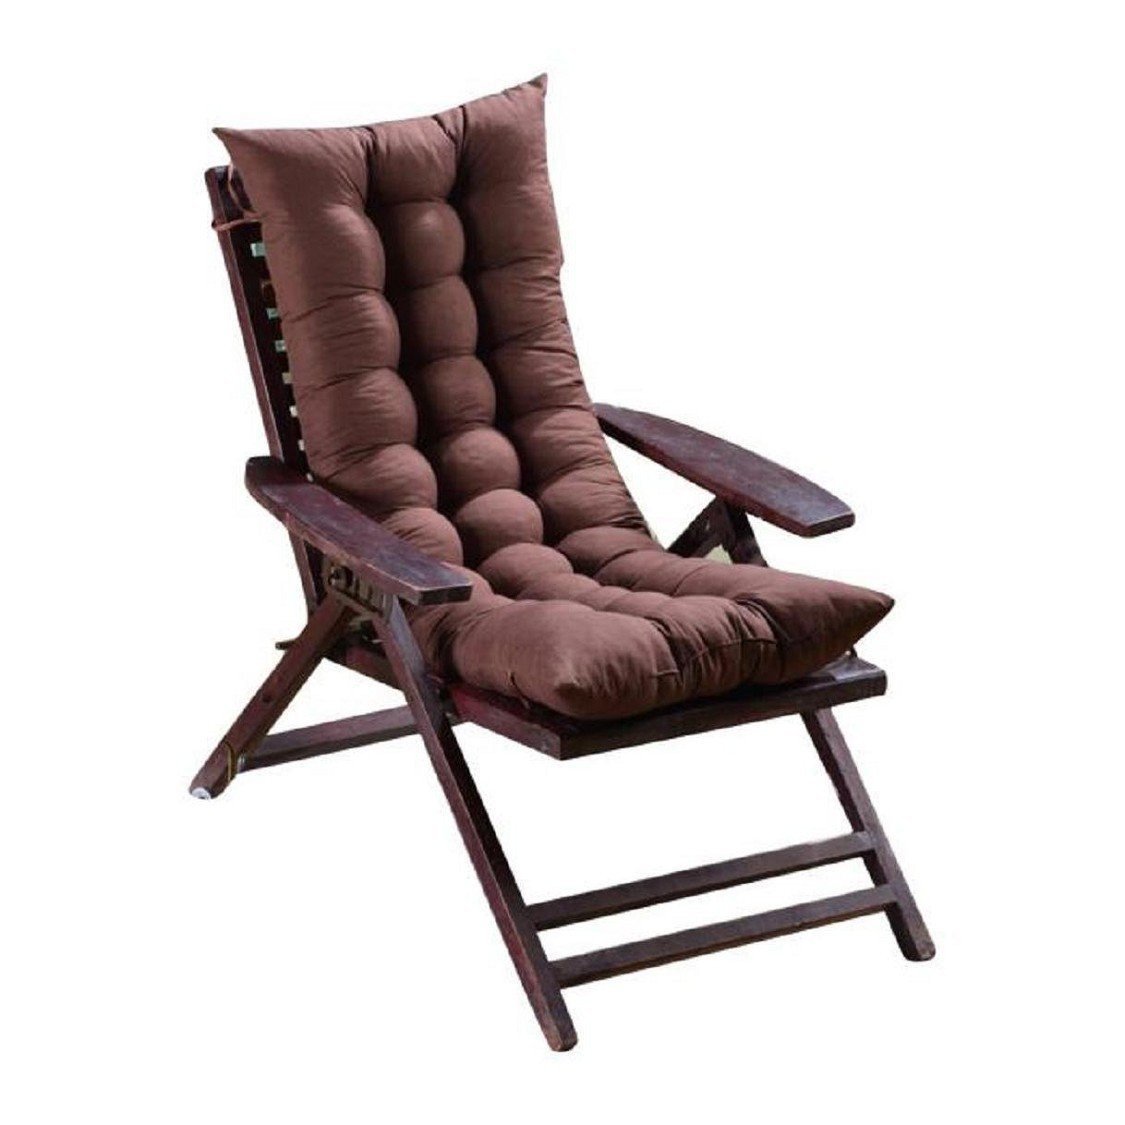 Most Comfortable Living Roomfurniture Elegant Most fortable Living Room Chair Home Furniture Design